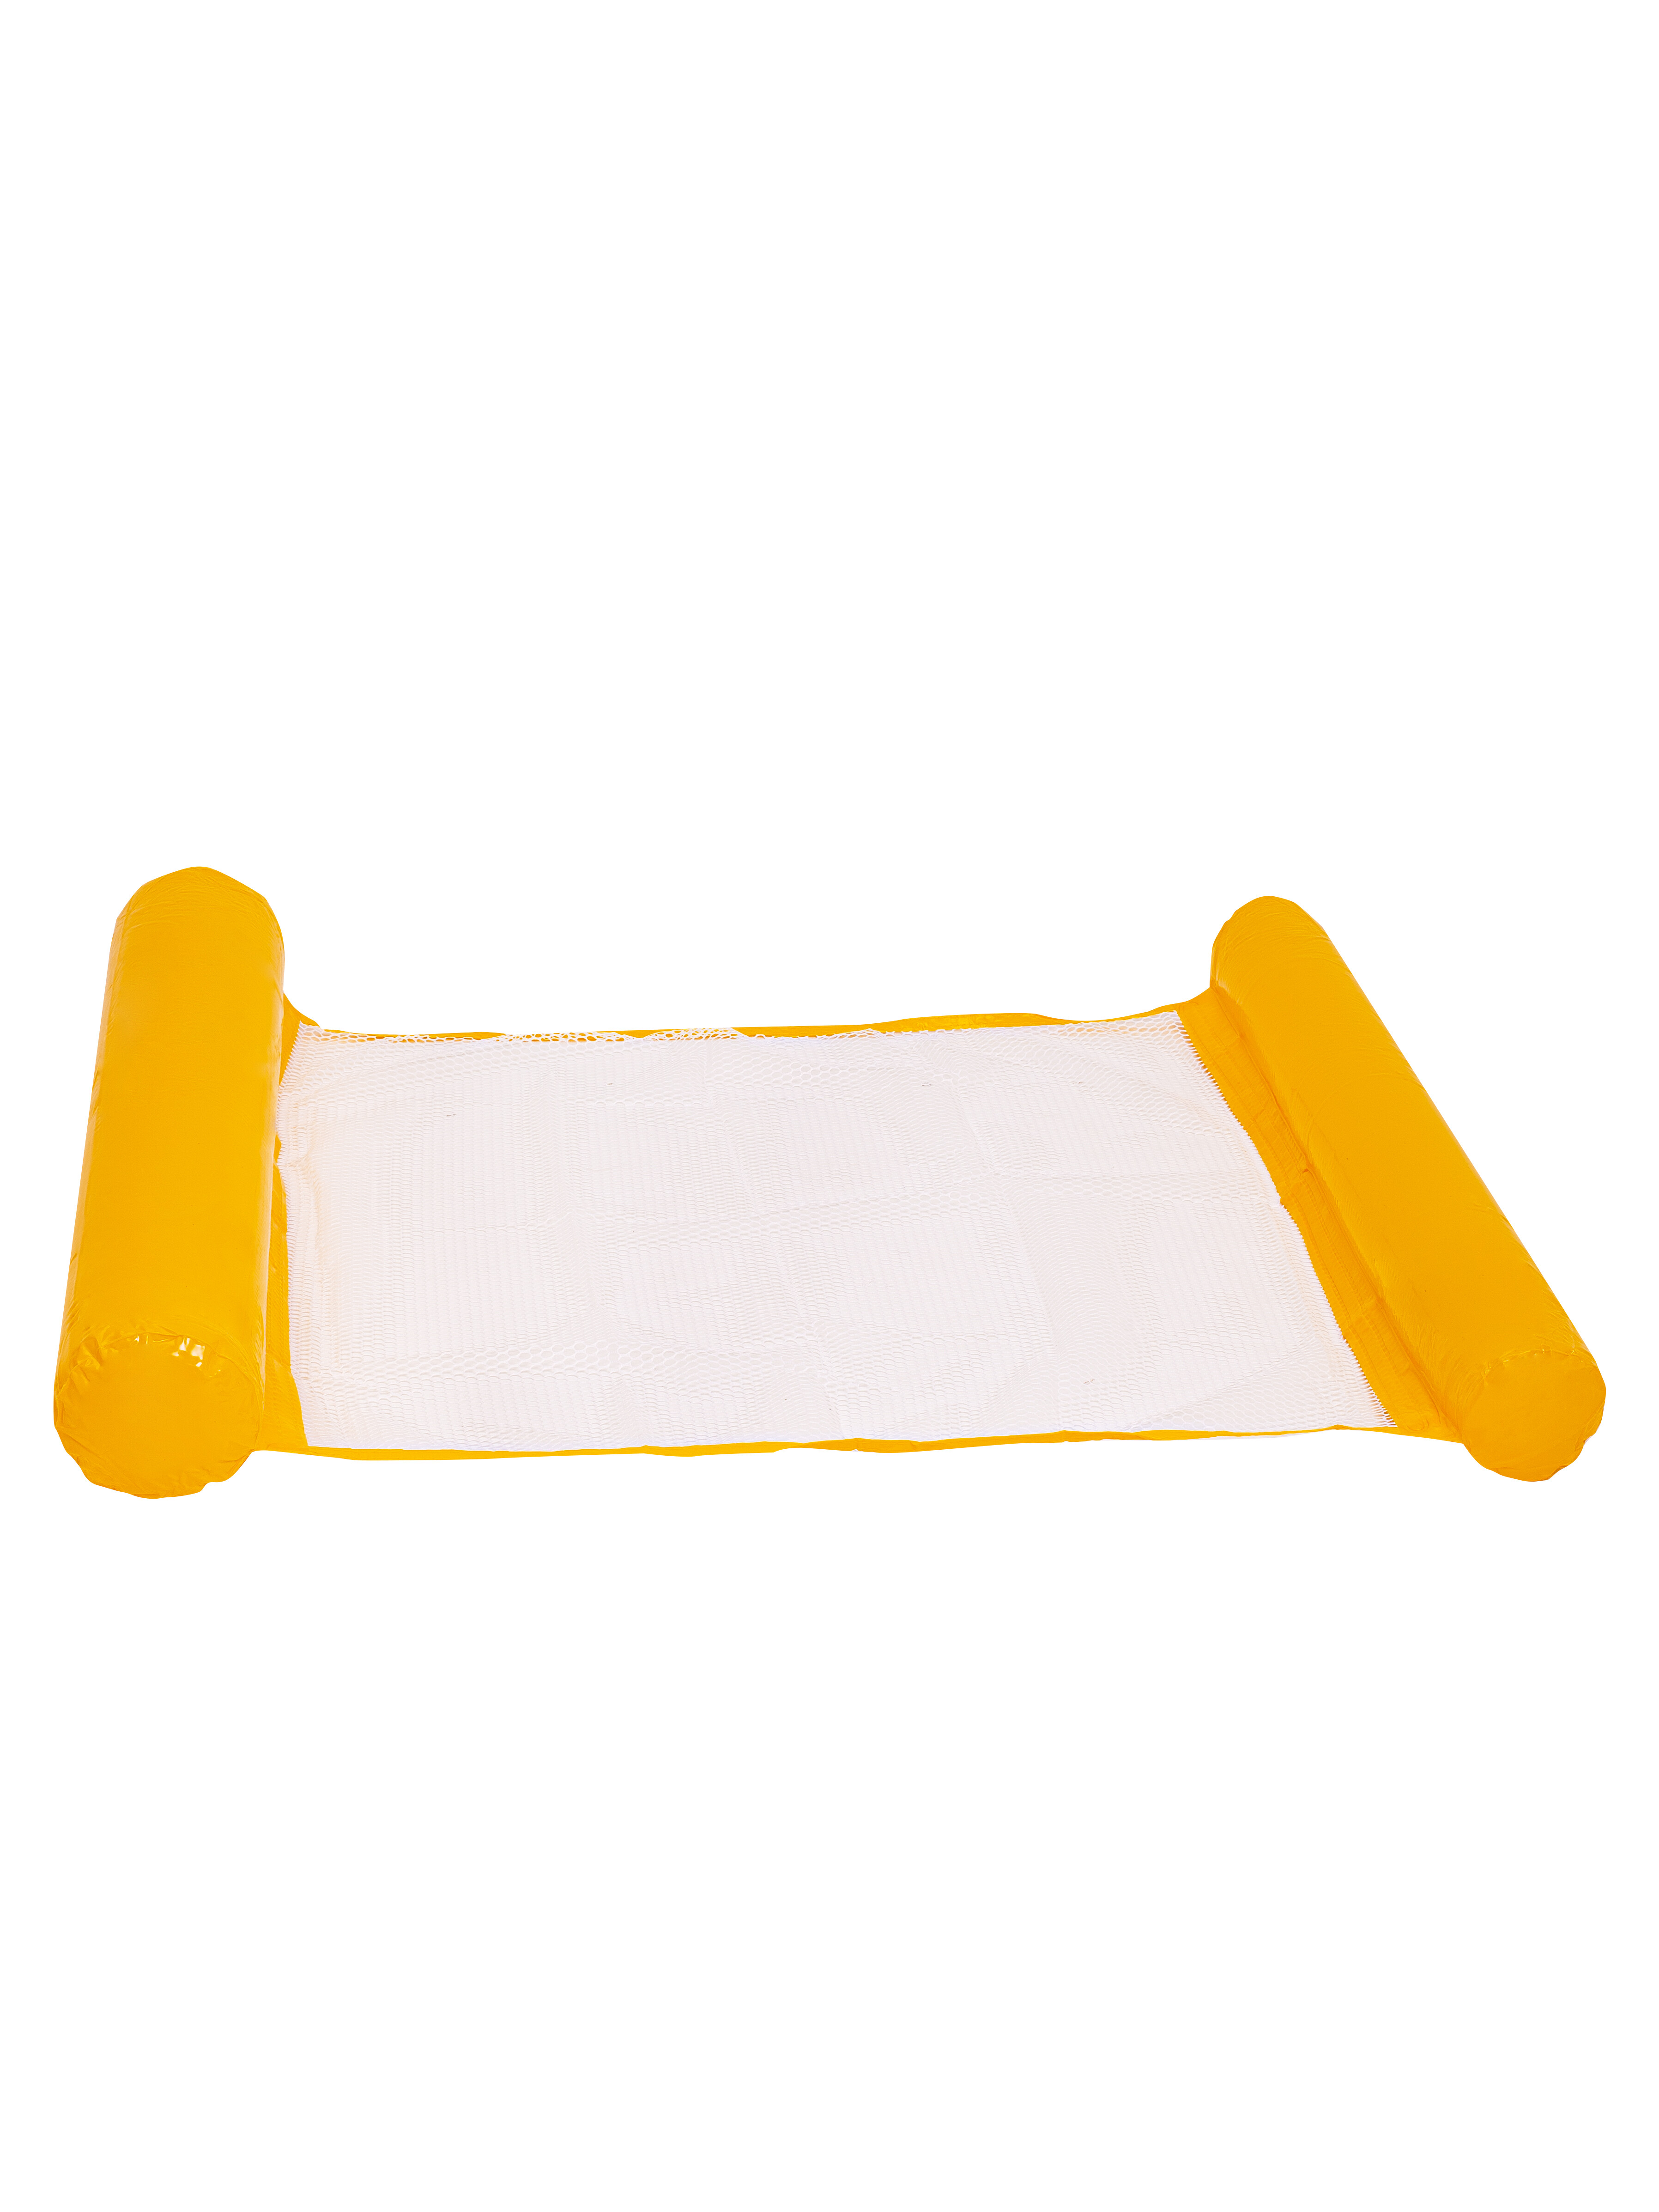 фото Круг для плавания solmax с подстаканником, надувной круг-гамак матрас, желтый sm90462